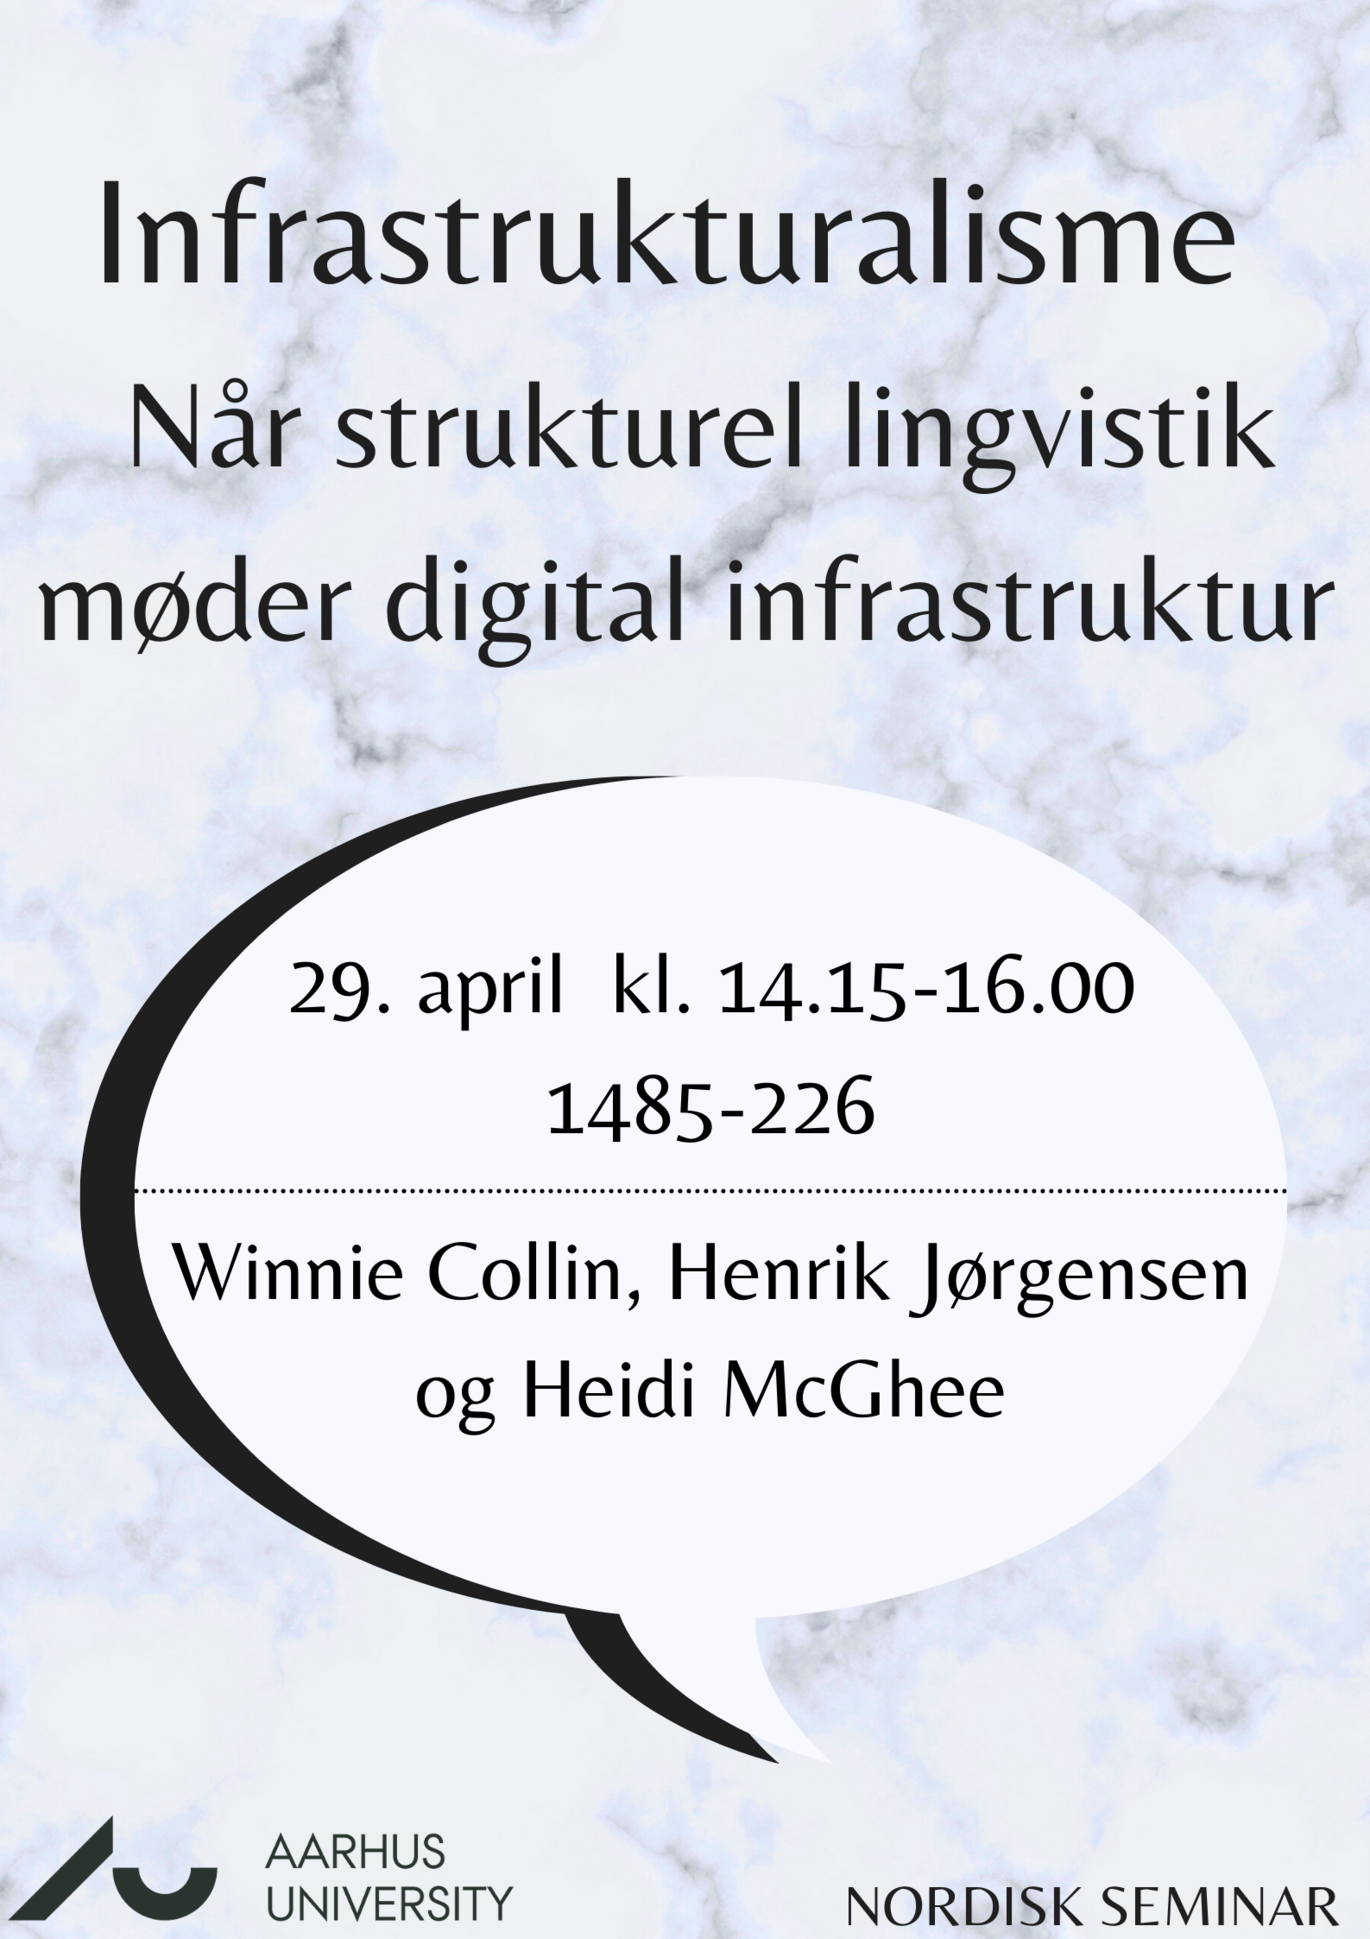 Nordisk Seminar: Infrastrukturalisme - når strukturel lingvistik møder digital infrastruktur. Den 29. april, kl. 14:00-16:00, lokale 1485-226.